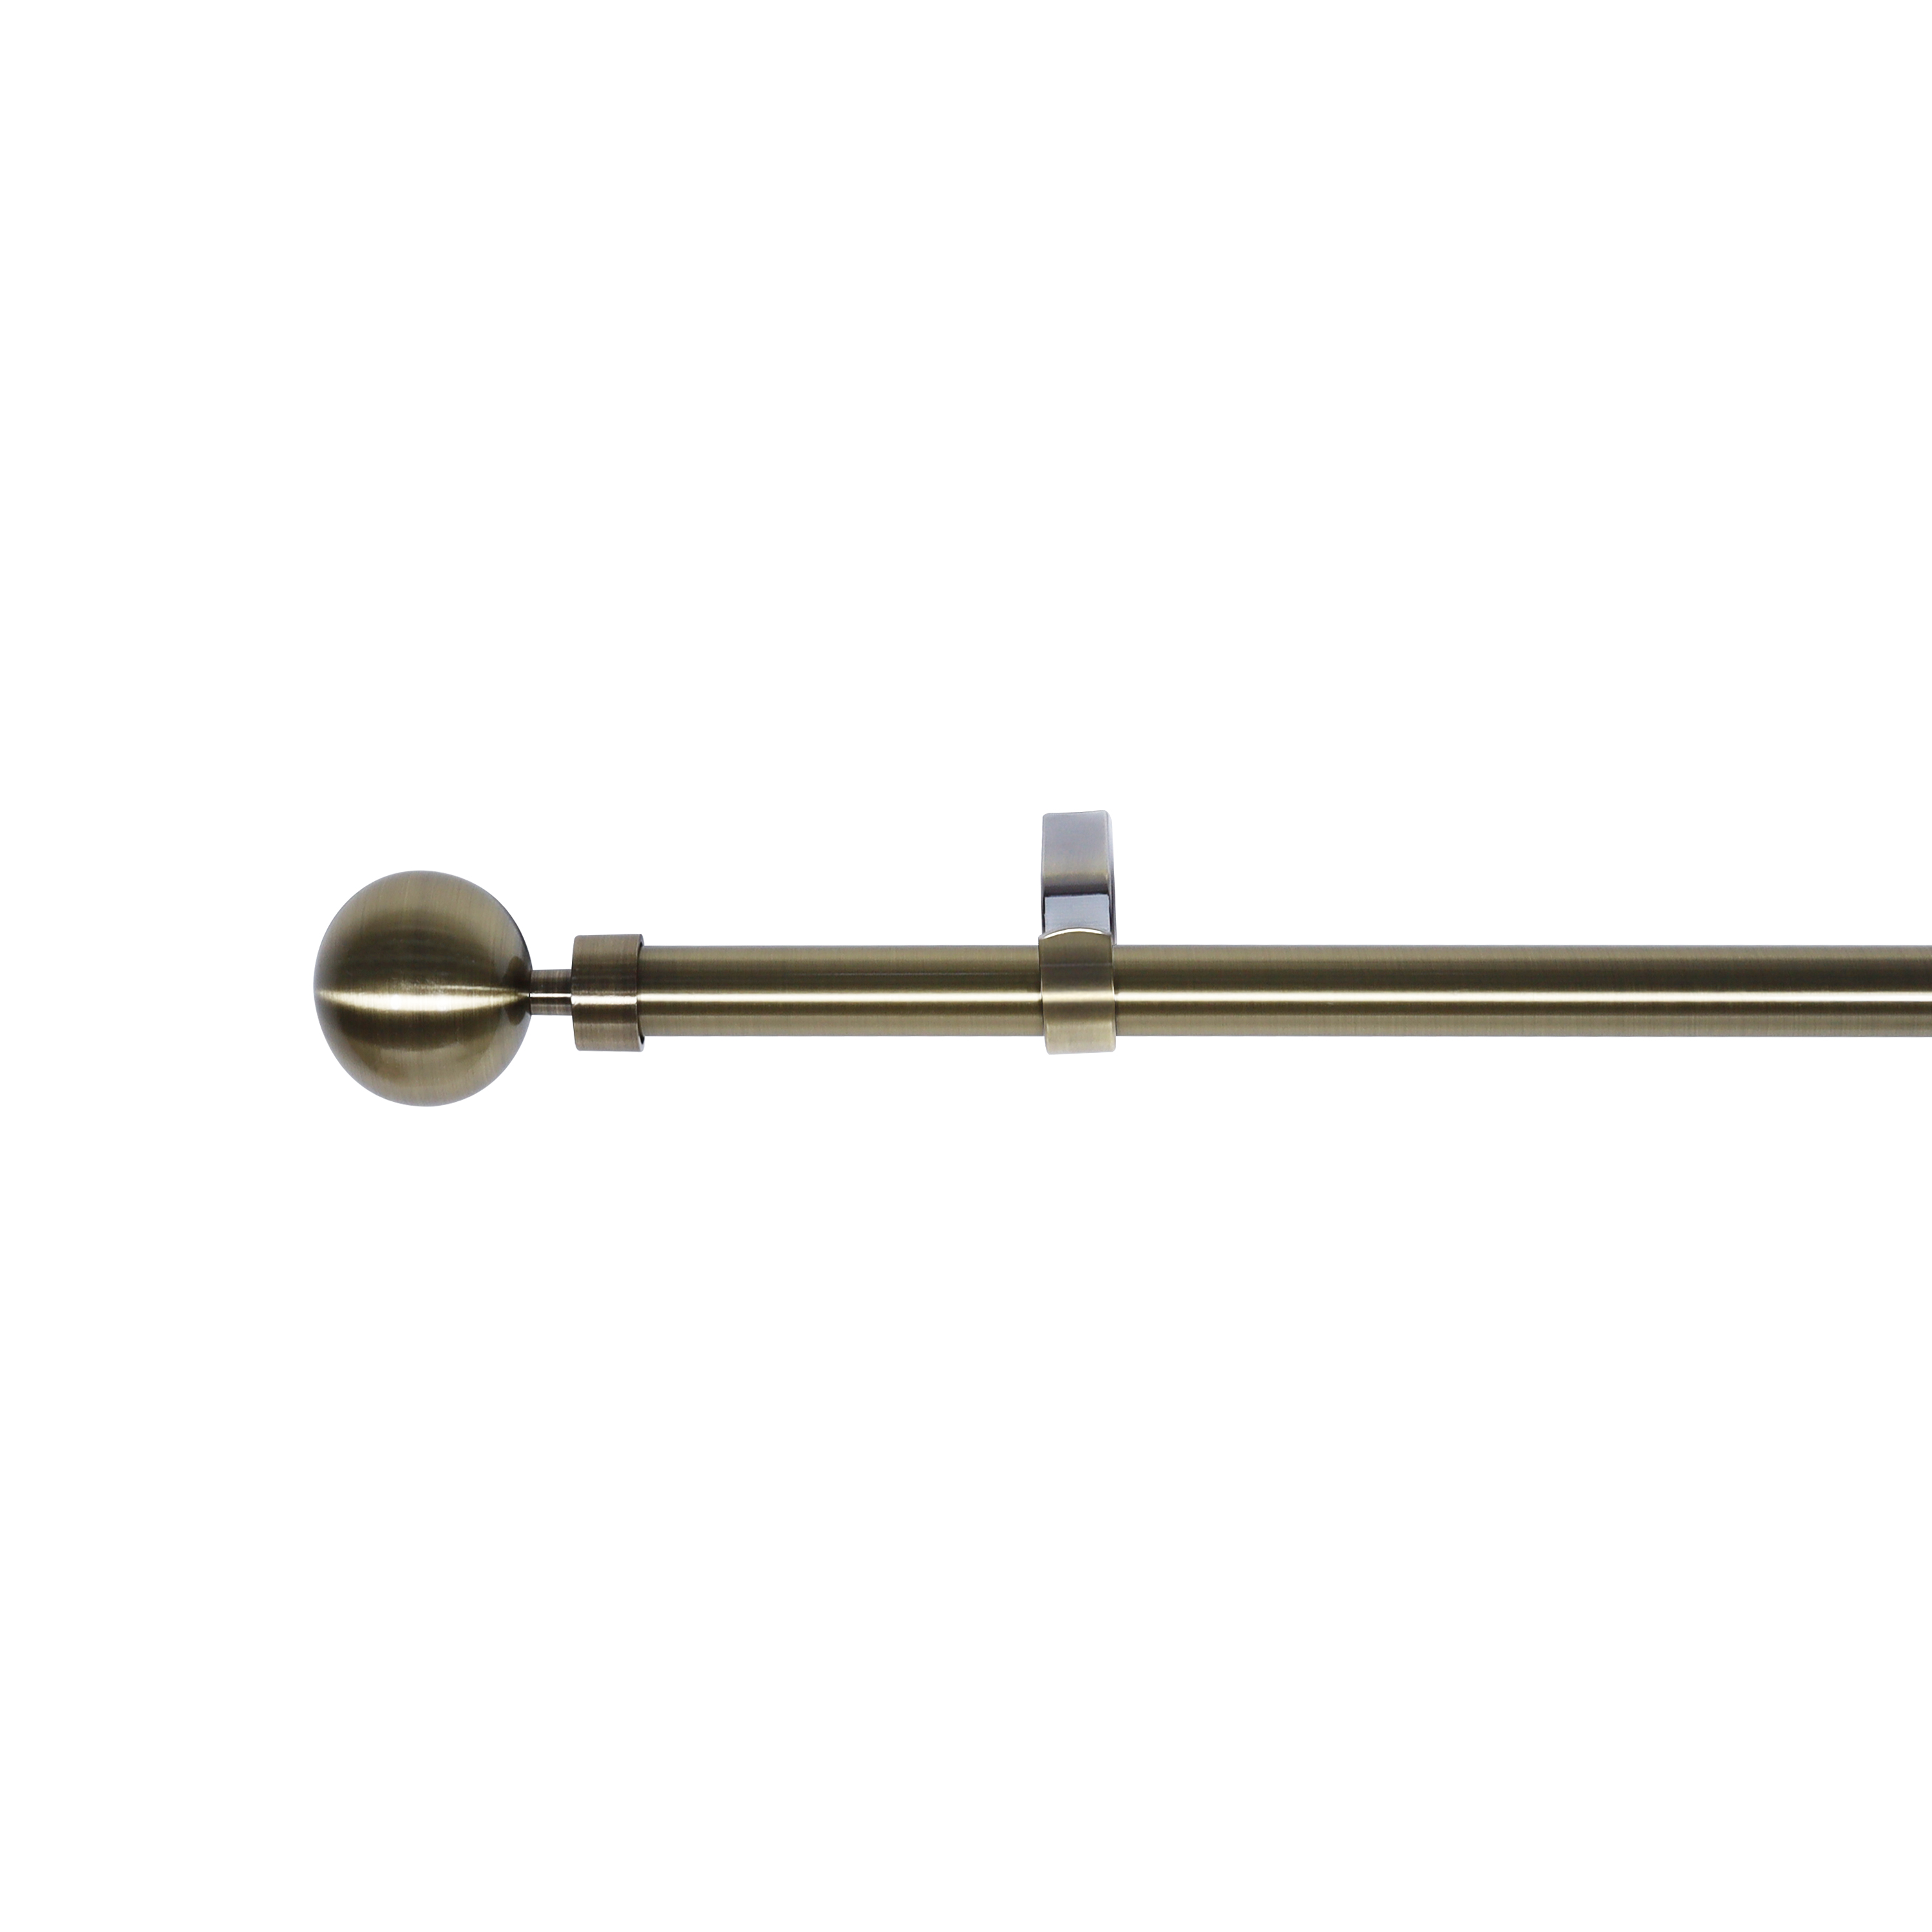 Kit de barras para cortina metal ball inspire bronce d16-19mm ext 160-300 cm